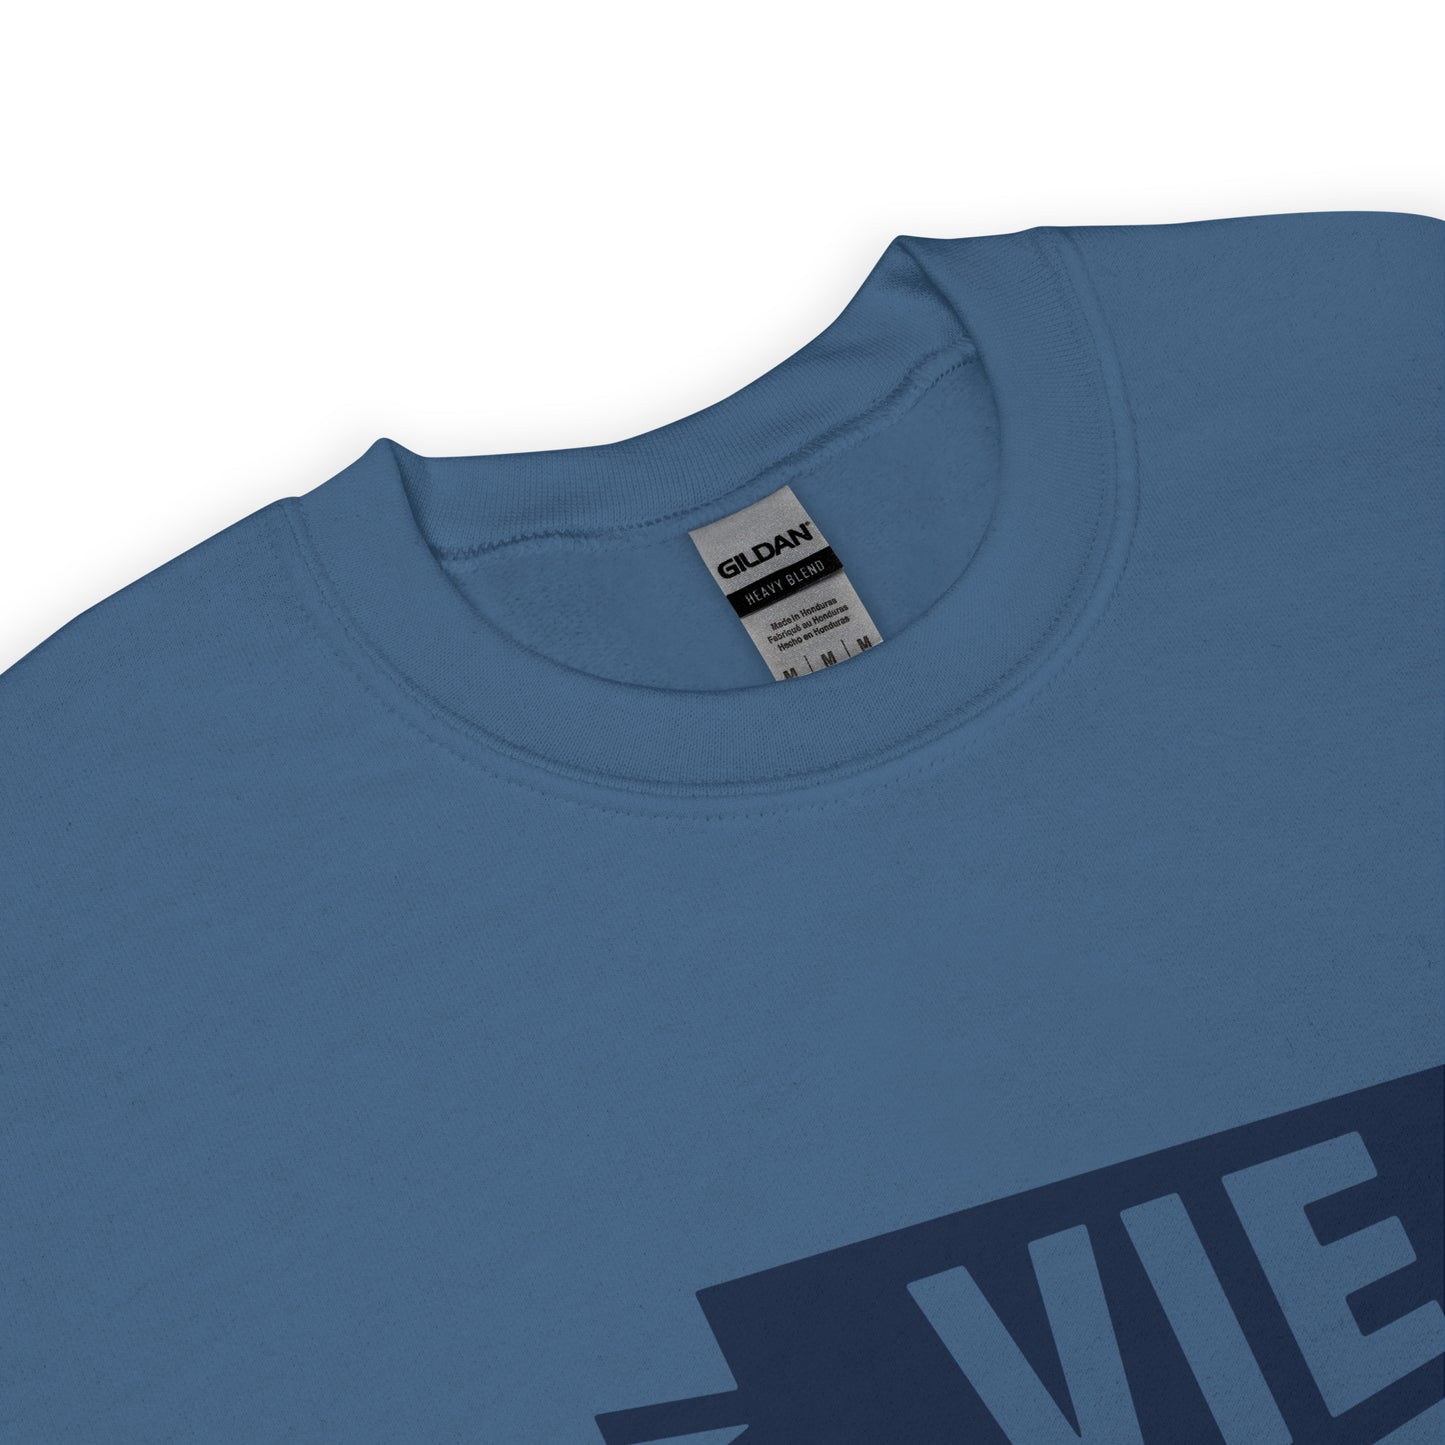 Airport Code Sweatshirt - Navy Blue Graphic • VIE Vienna • YHM Designs - Image 04